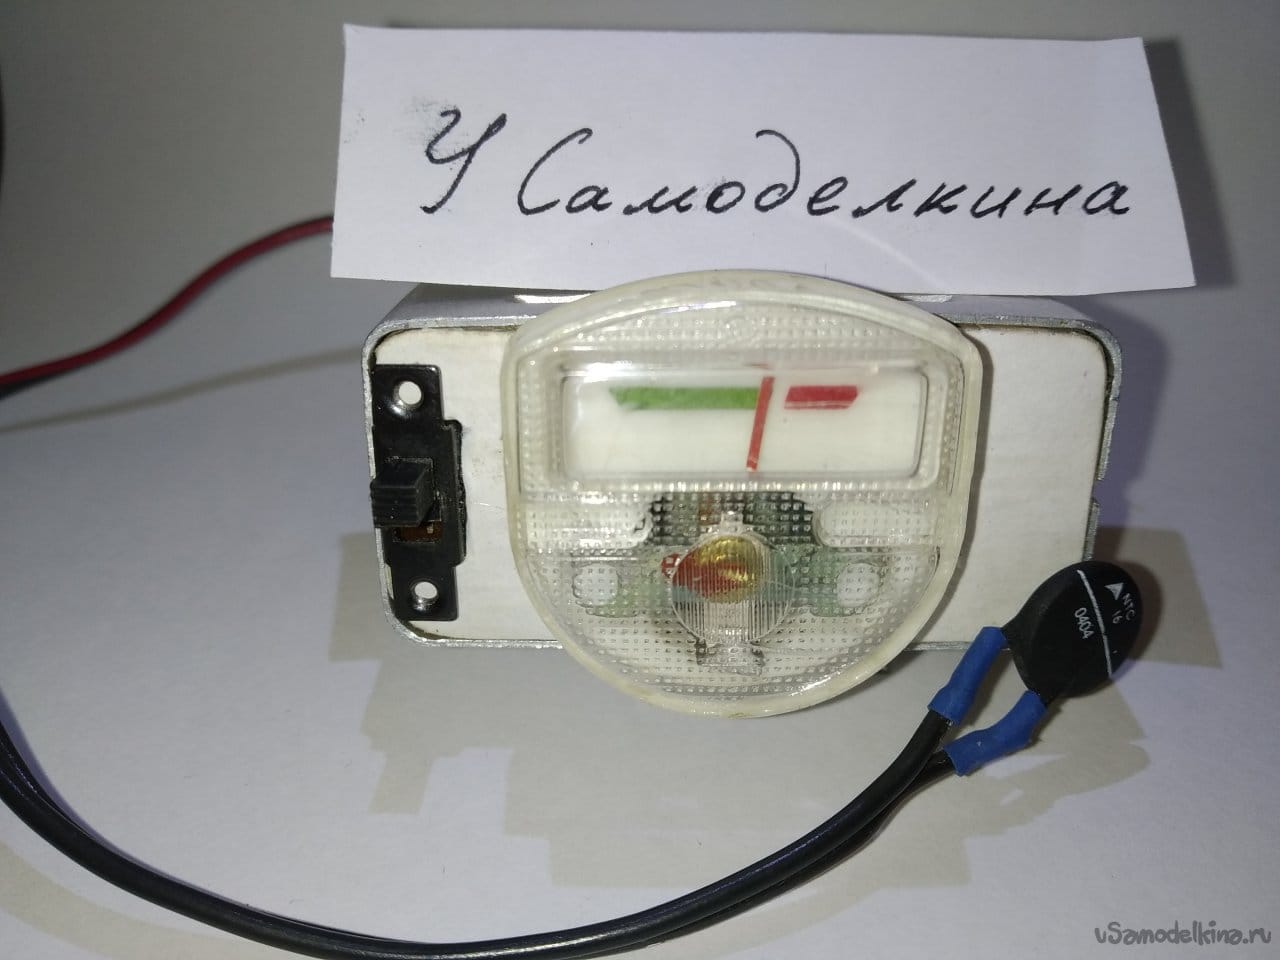 Индикатор изменения температуры с терморезистором и корпусом из реле